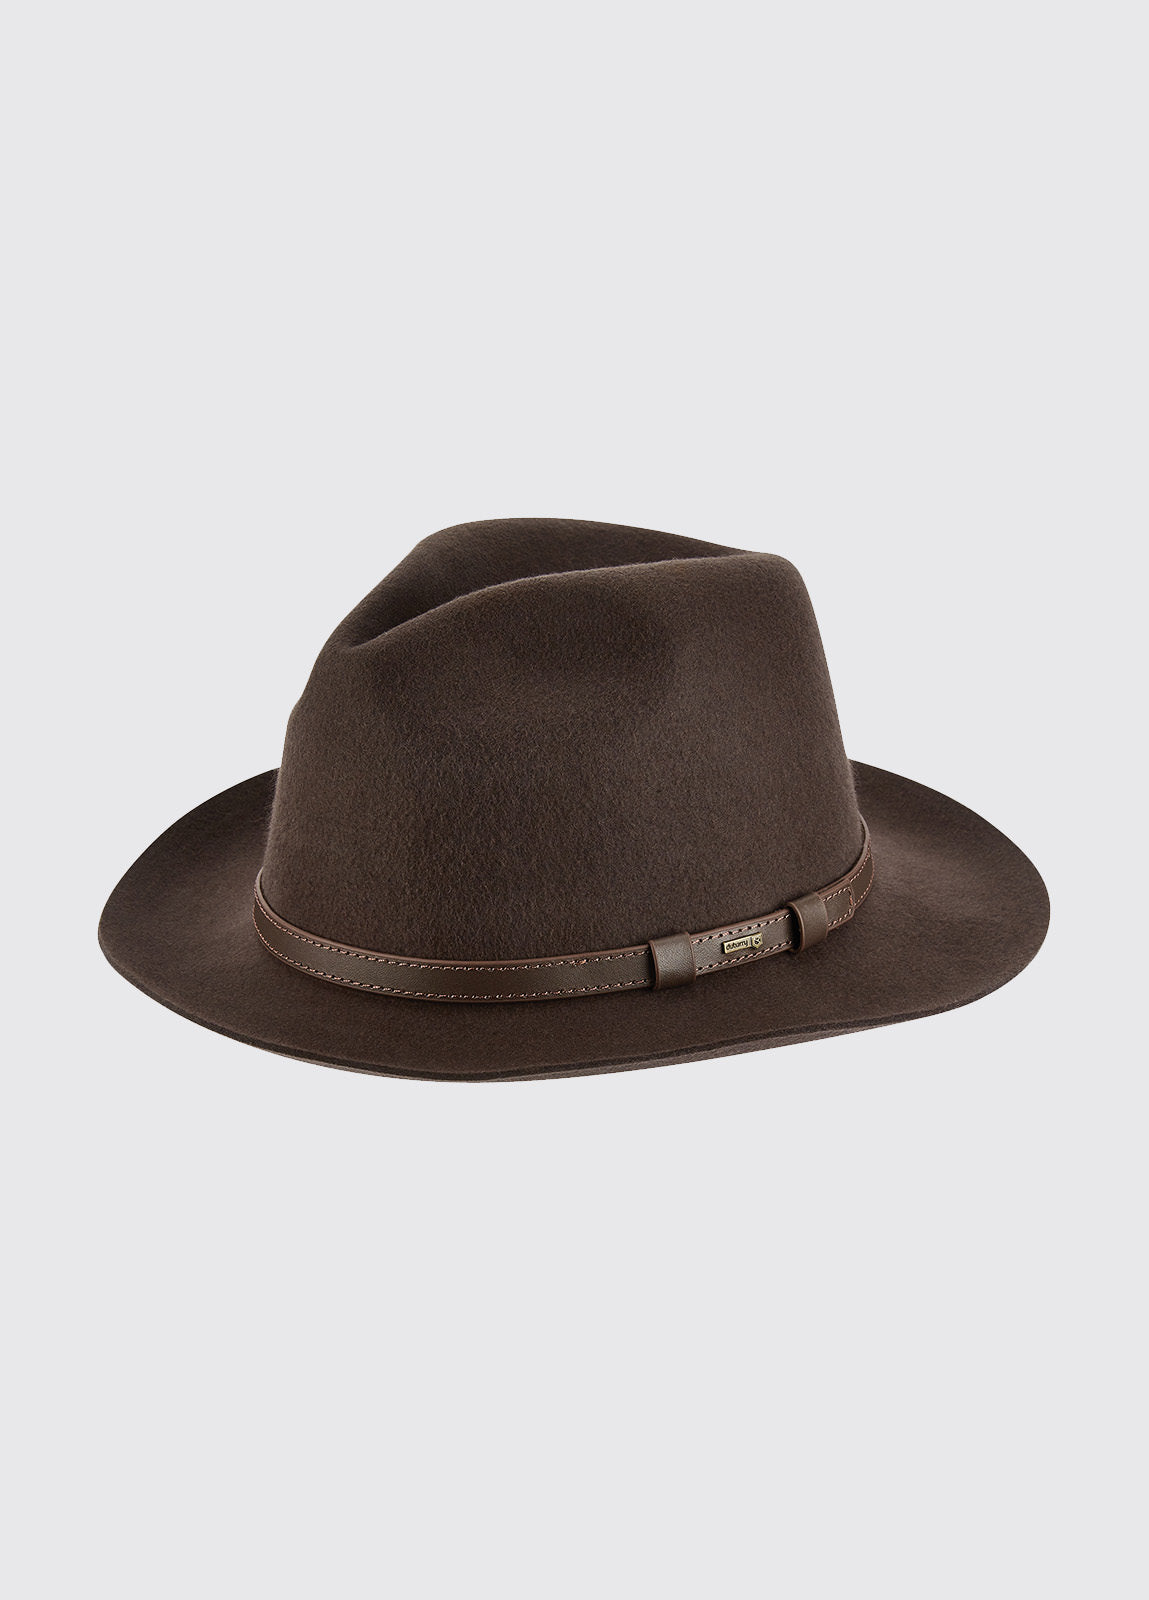 Frontier Hat - Brown